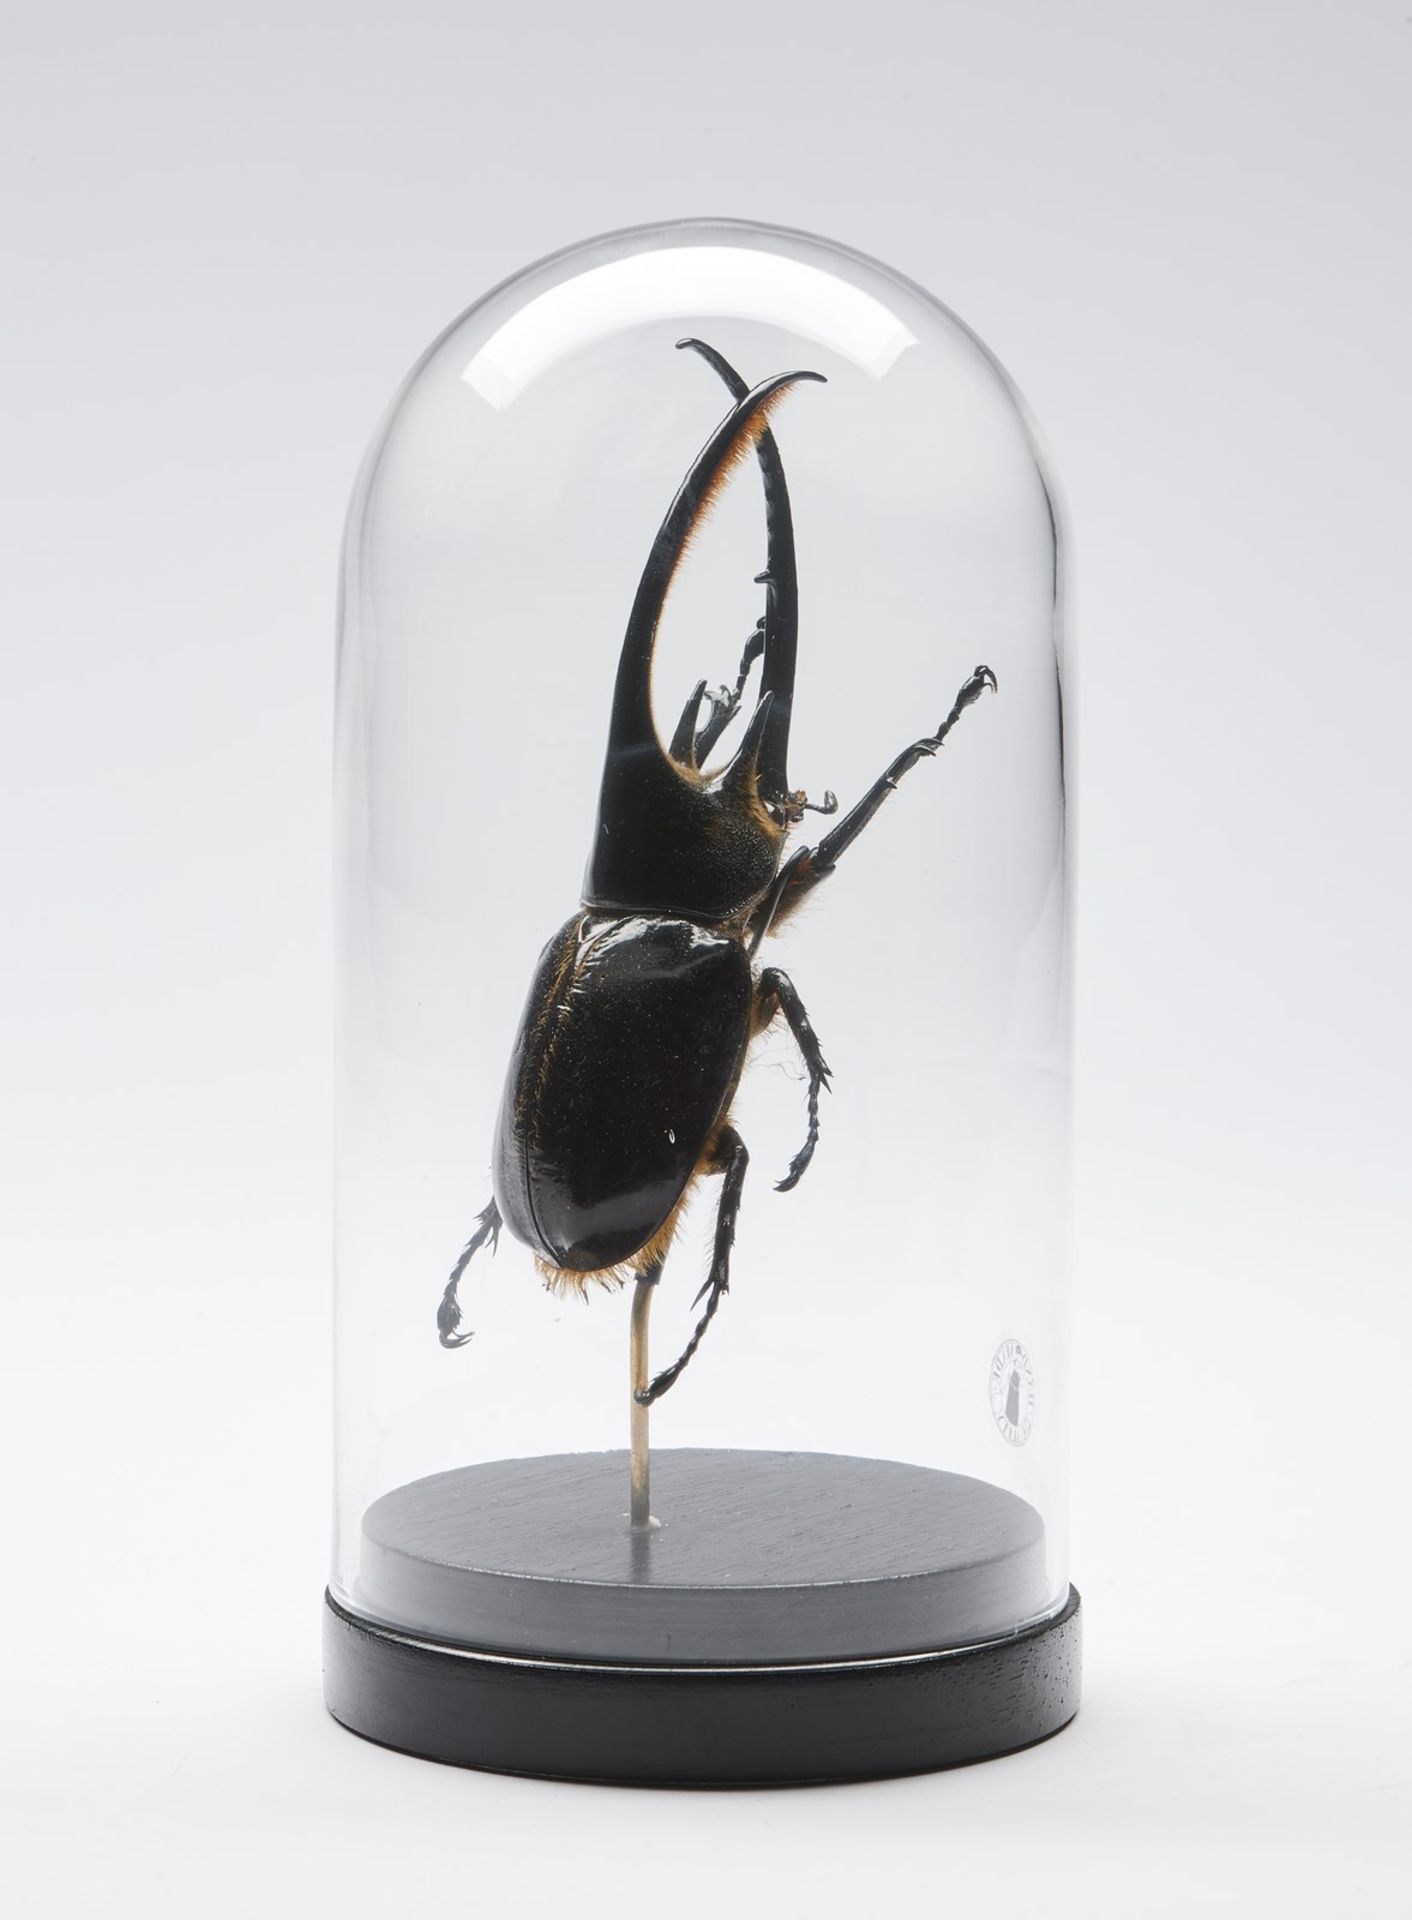 Naturalia Hercules beetle under glass bell. - Bild 2 aus 3